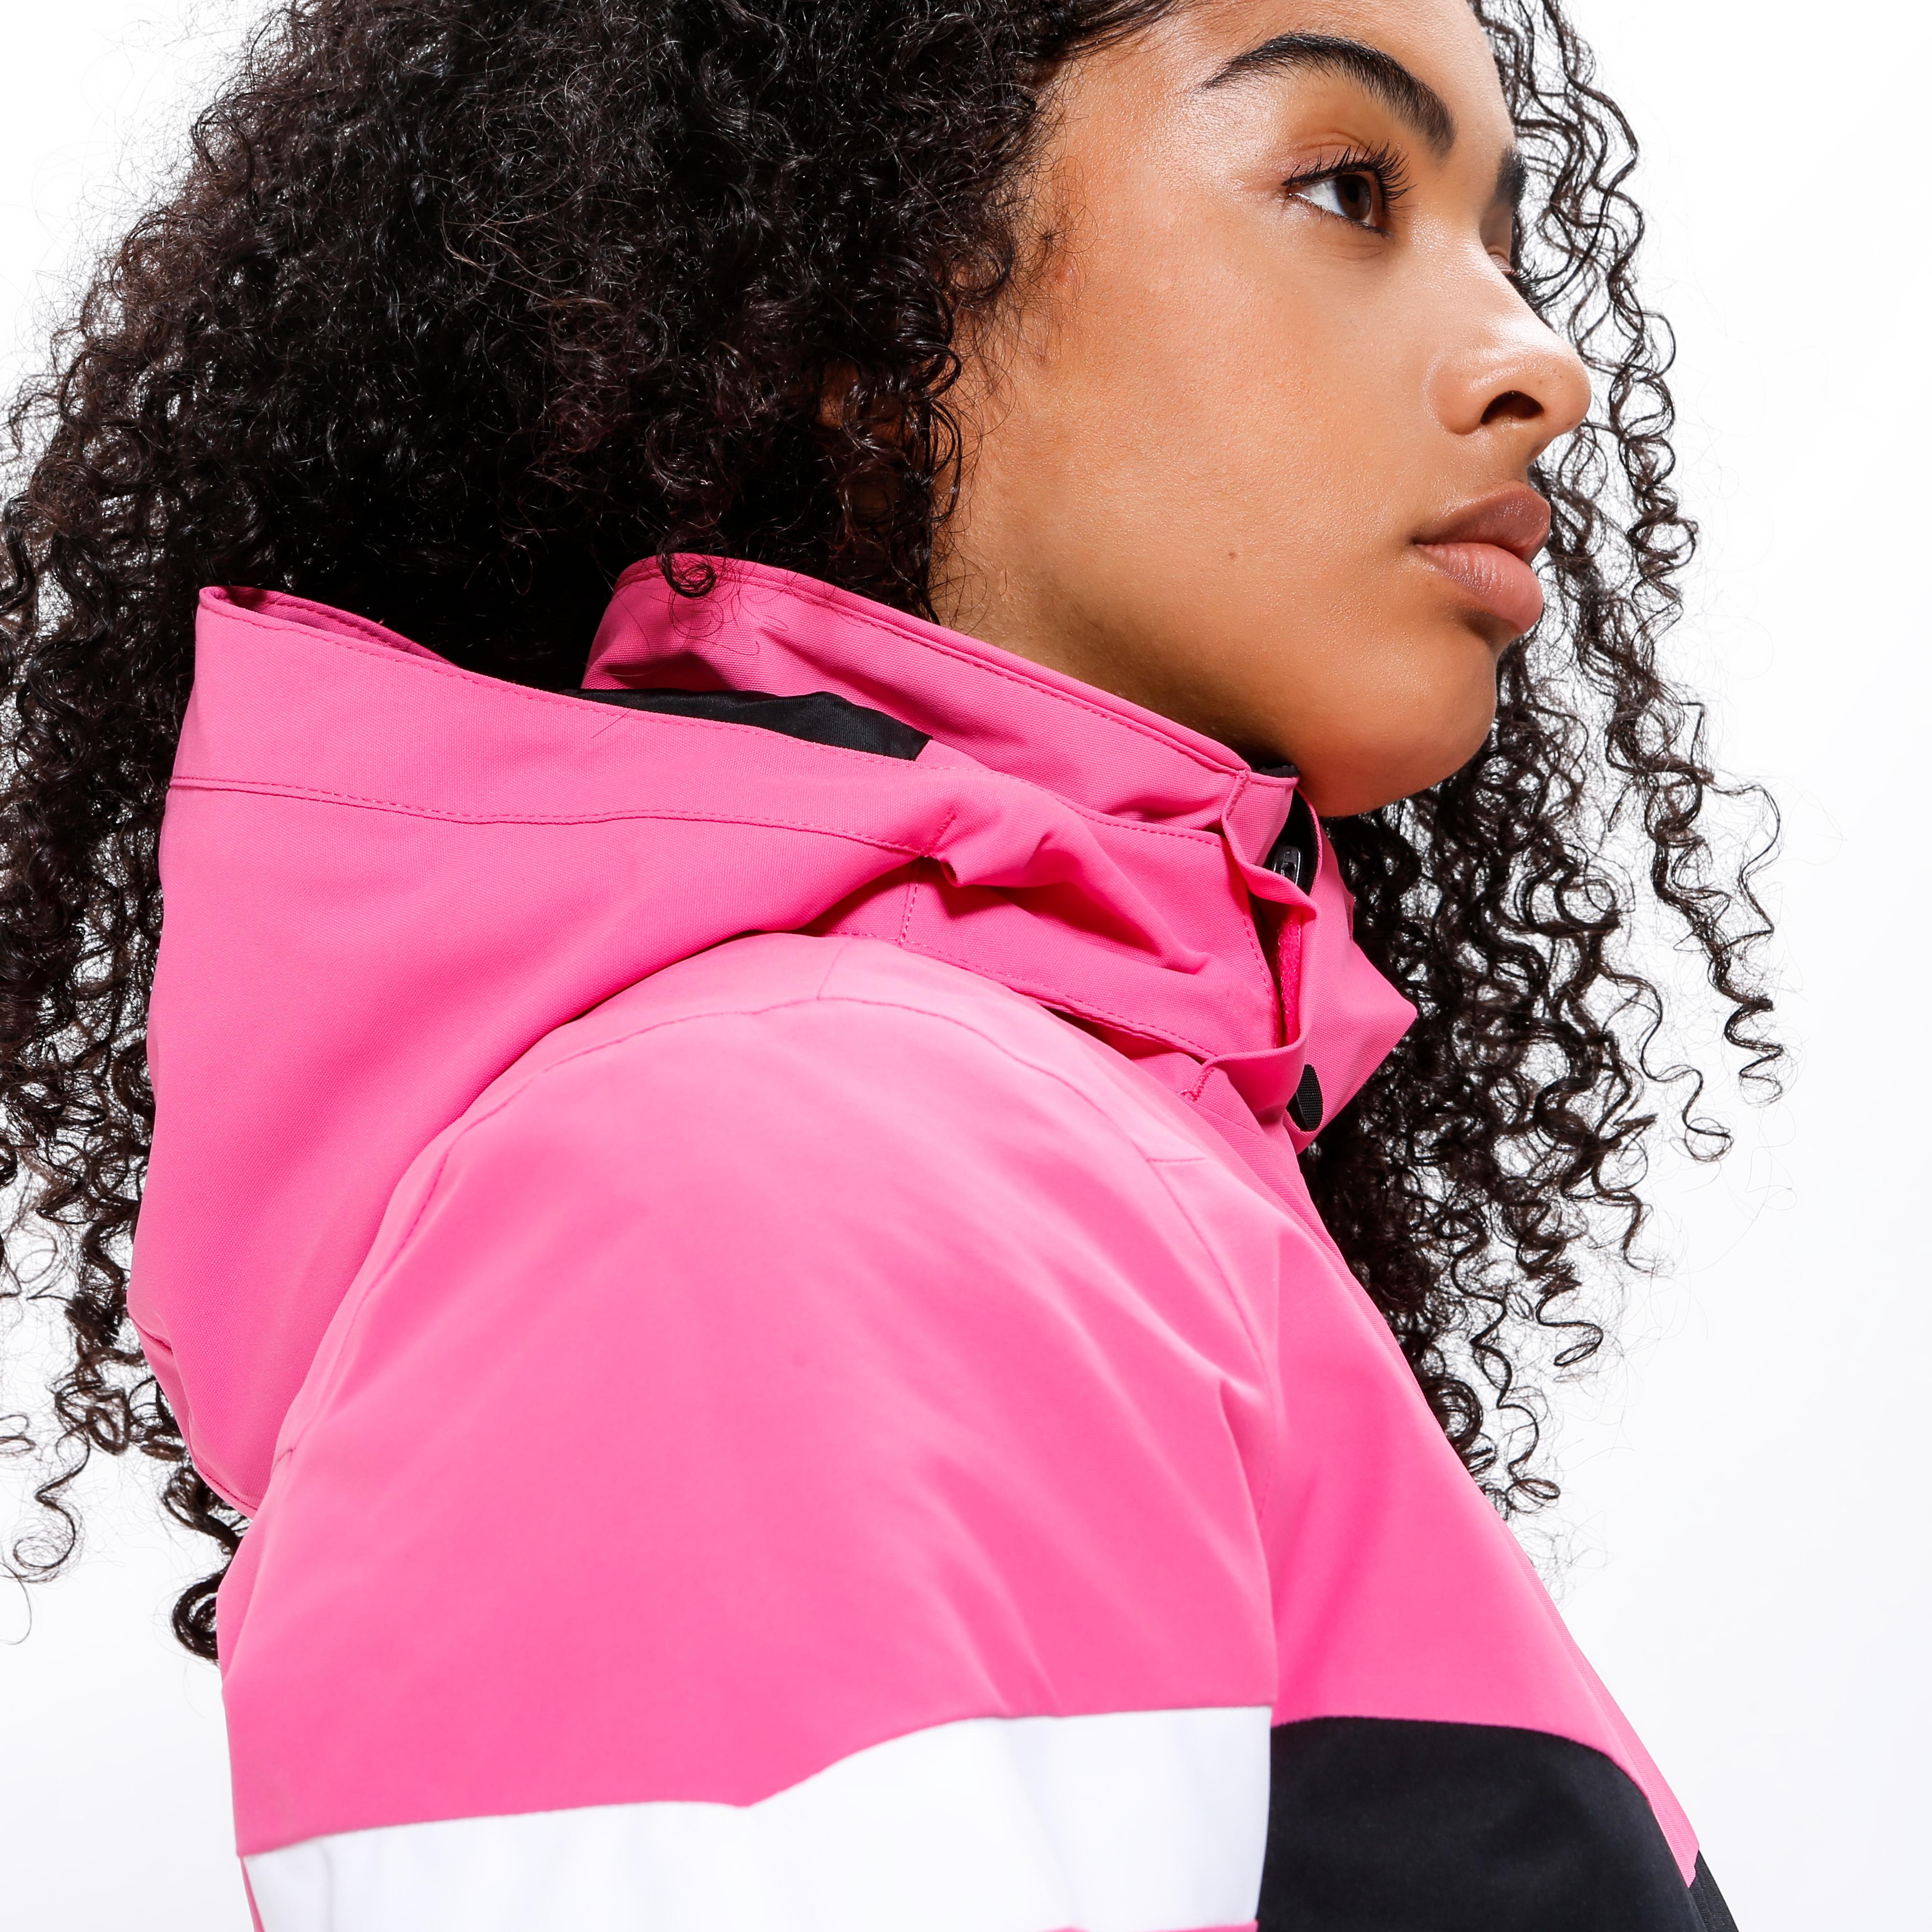 Ziener PEGINA Skijacke Damen Shop SportScheck Online pink dahlia von im kaufen